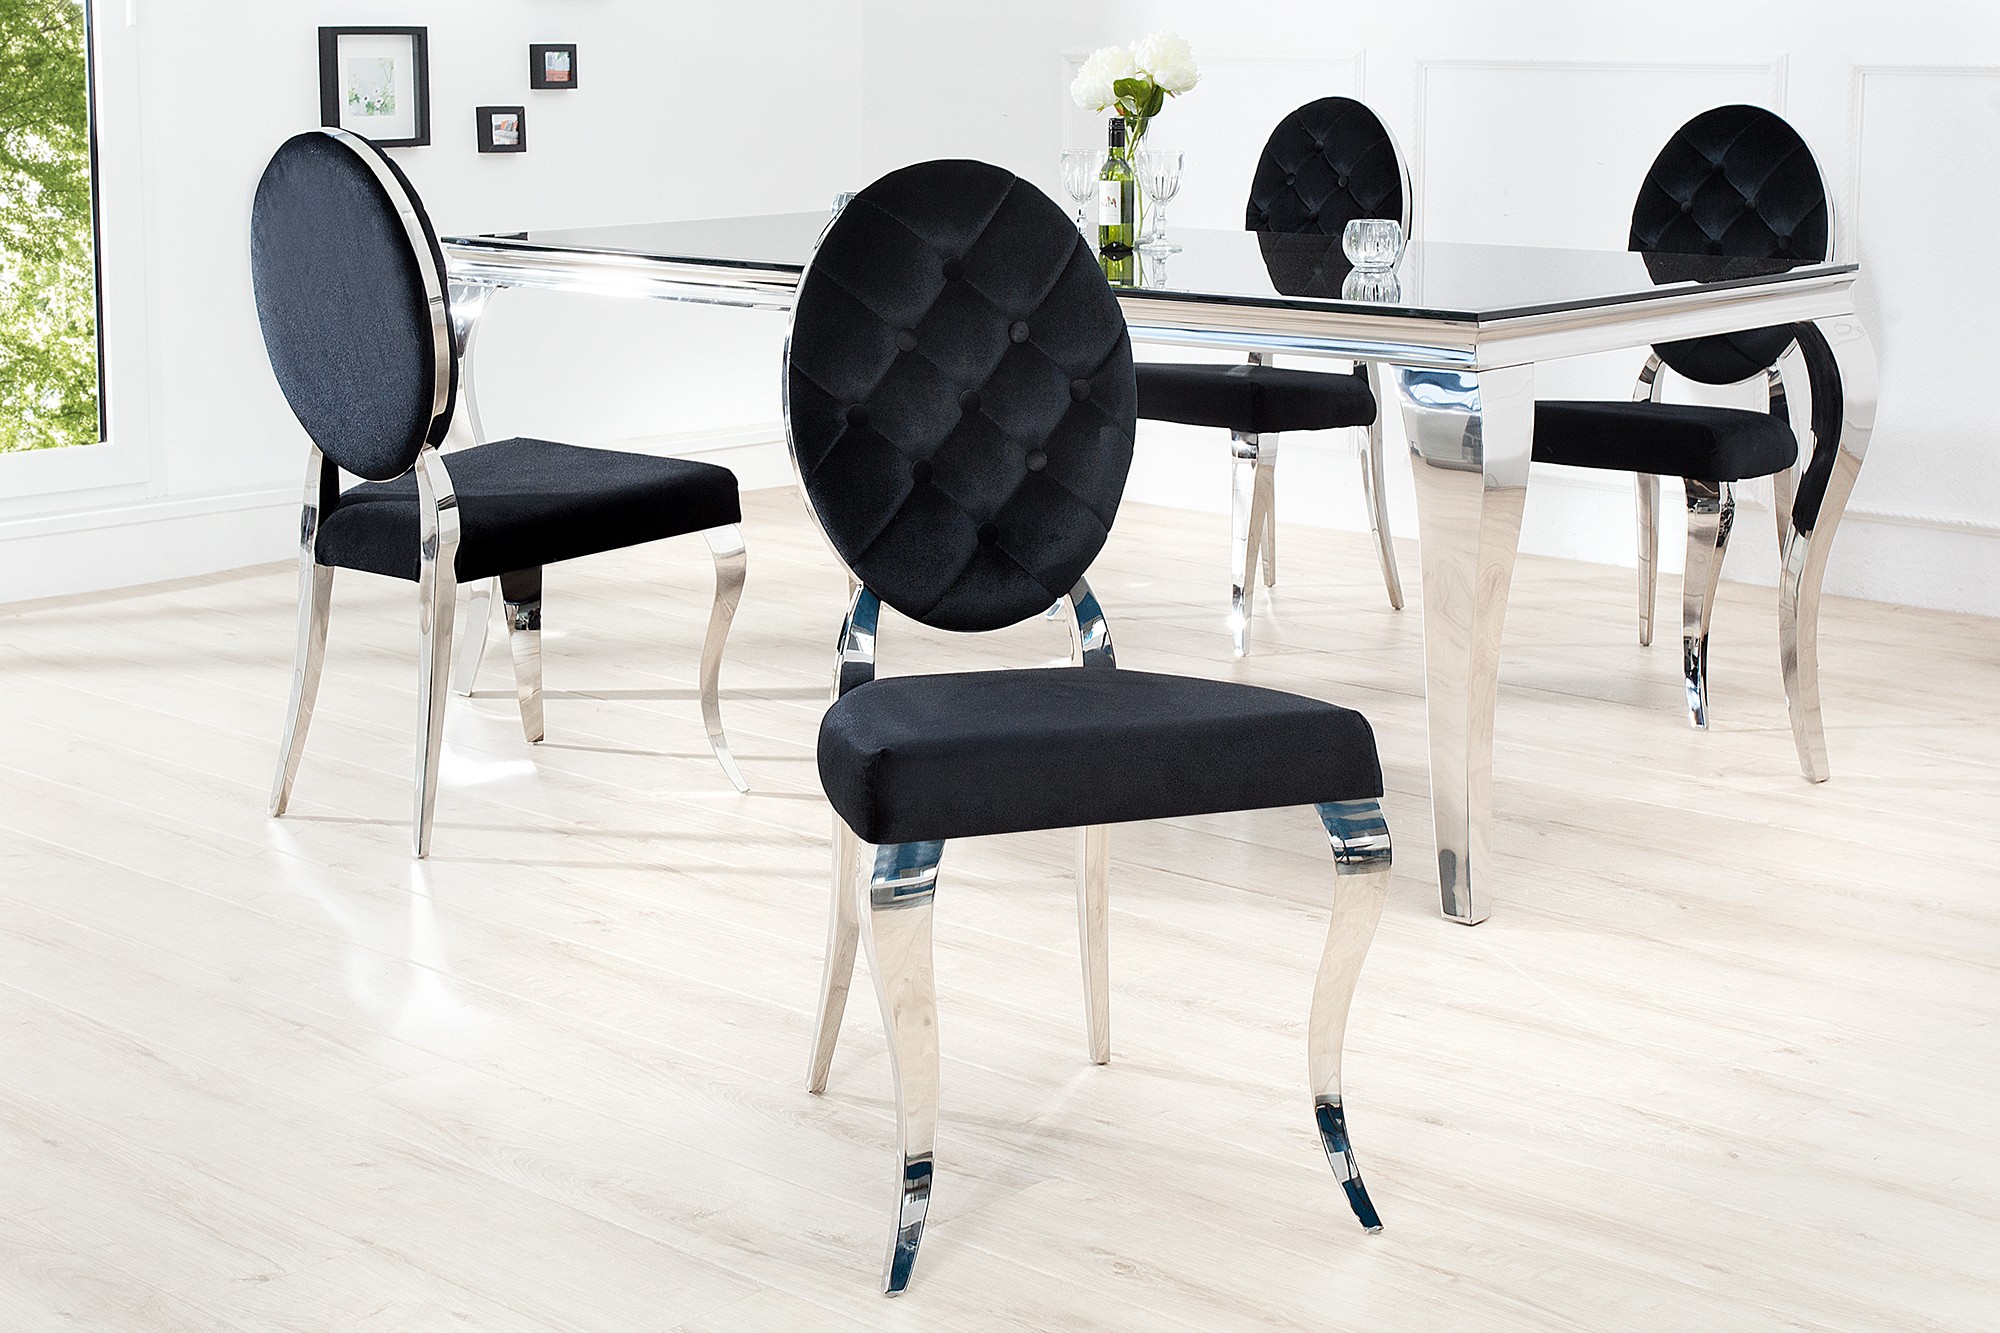 Estila Luxusná jedálenská stolička Modern Barock II čierna